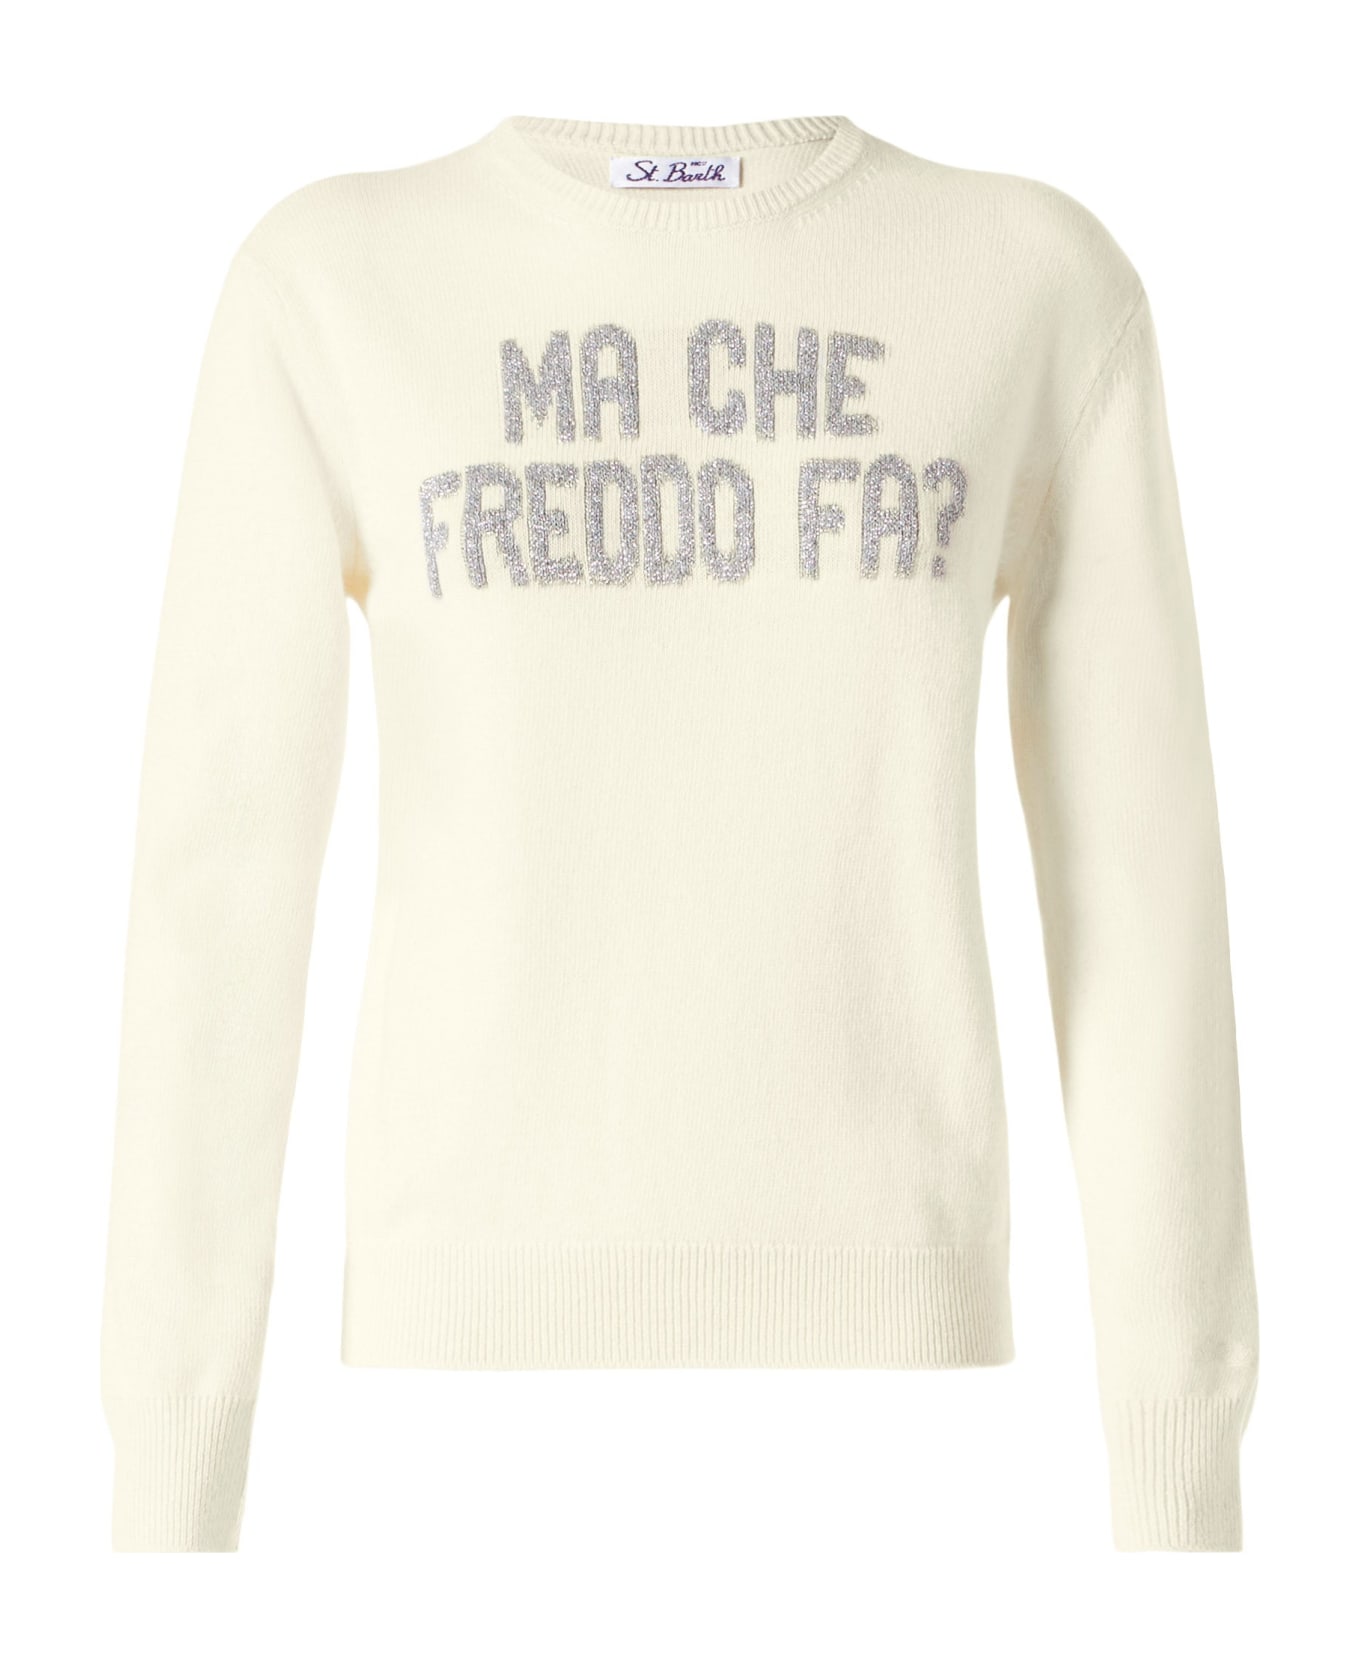 MC2 Saint Barth Woman Sweater With Ma Che Freddo Fa? Print - WHITE